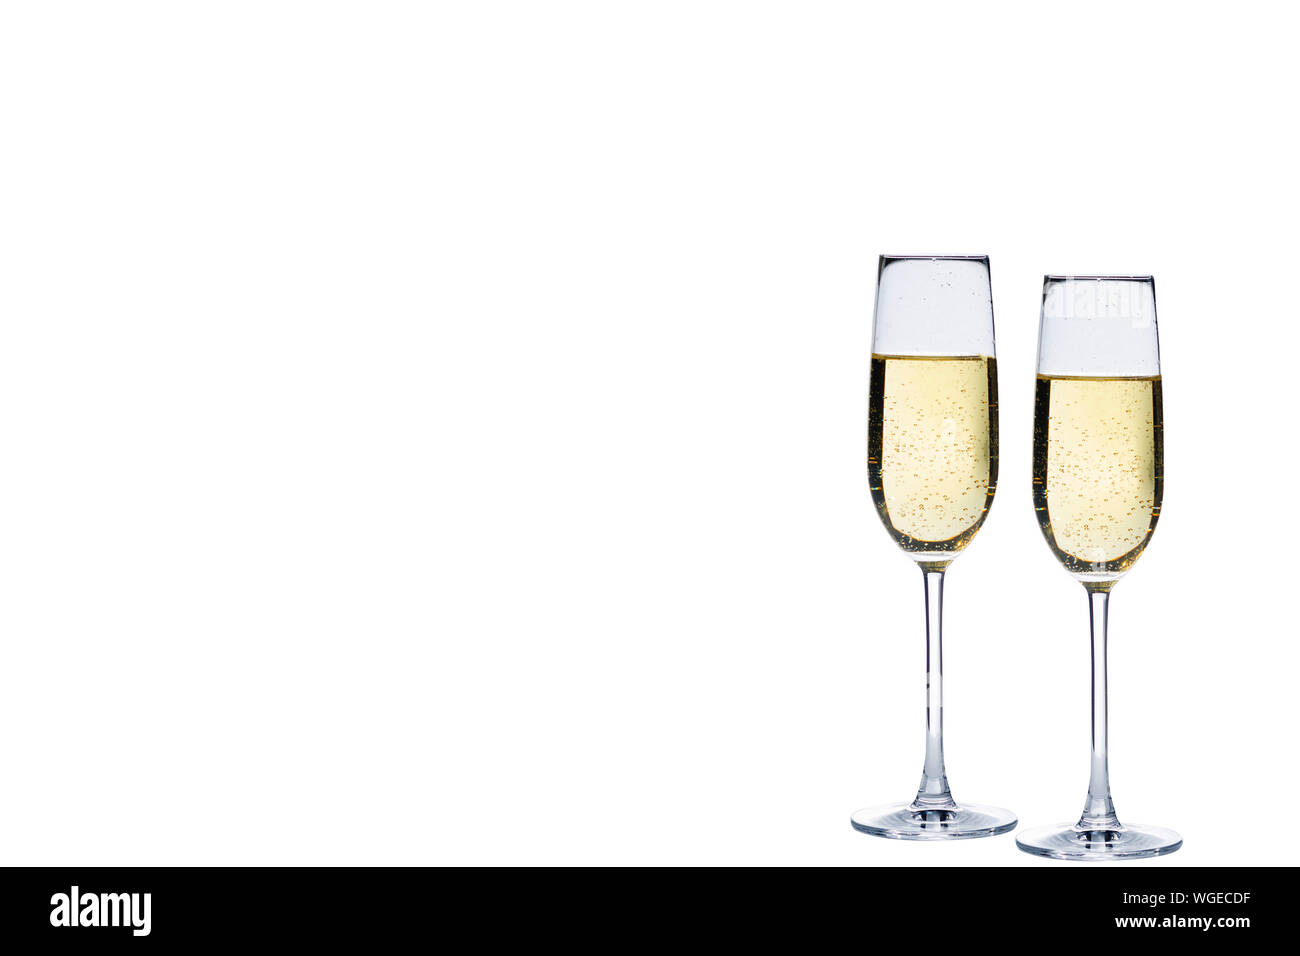 Close-up de Champagne contra el fondo blanco. Foto de stock